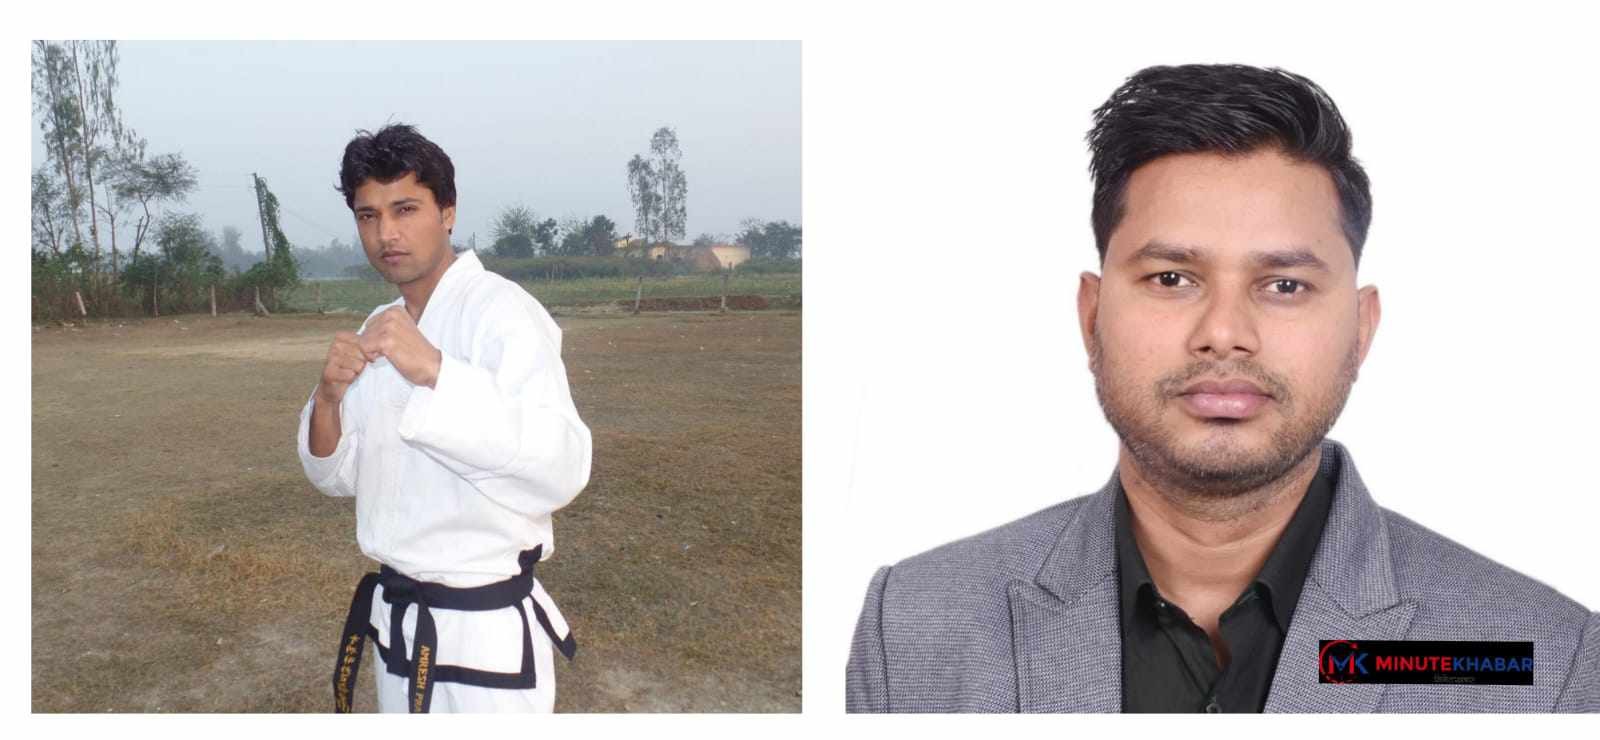 राष्ट्रिय मार्शल आर्ट गेम्स महासंघ लुम्बिनीको अध्यक्षमा अमरेश र उपाध्यक्षमा नितेश